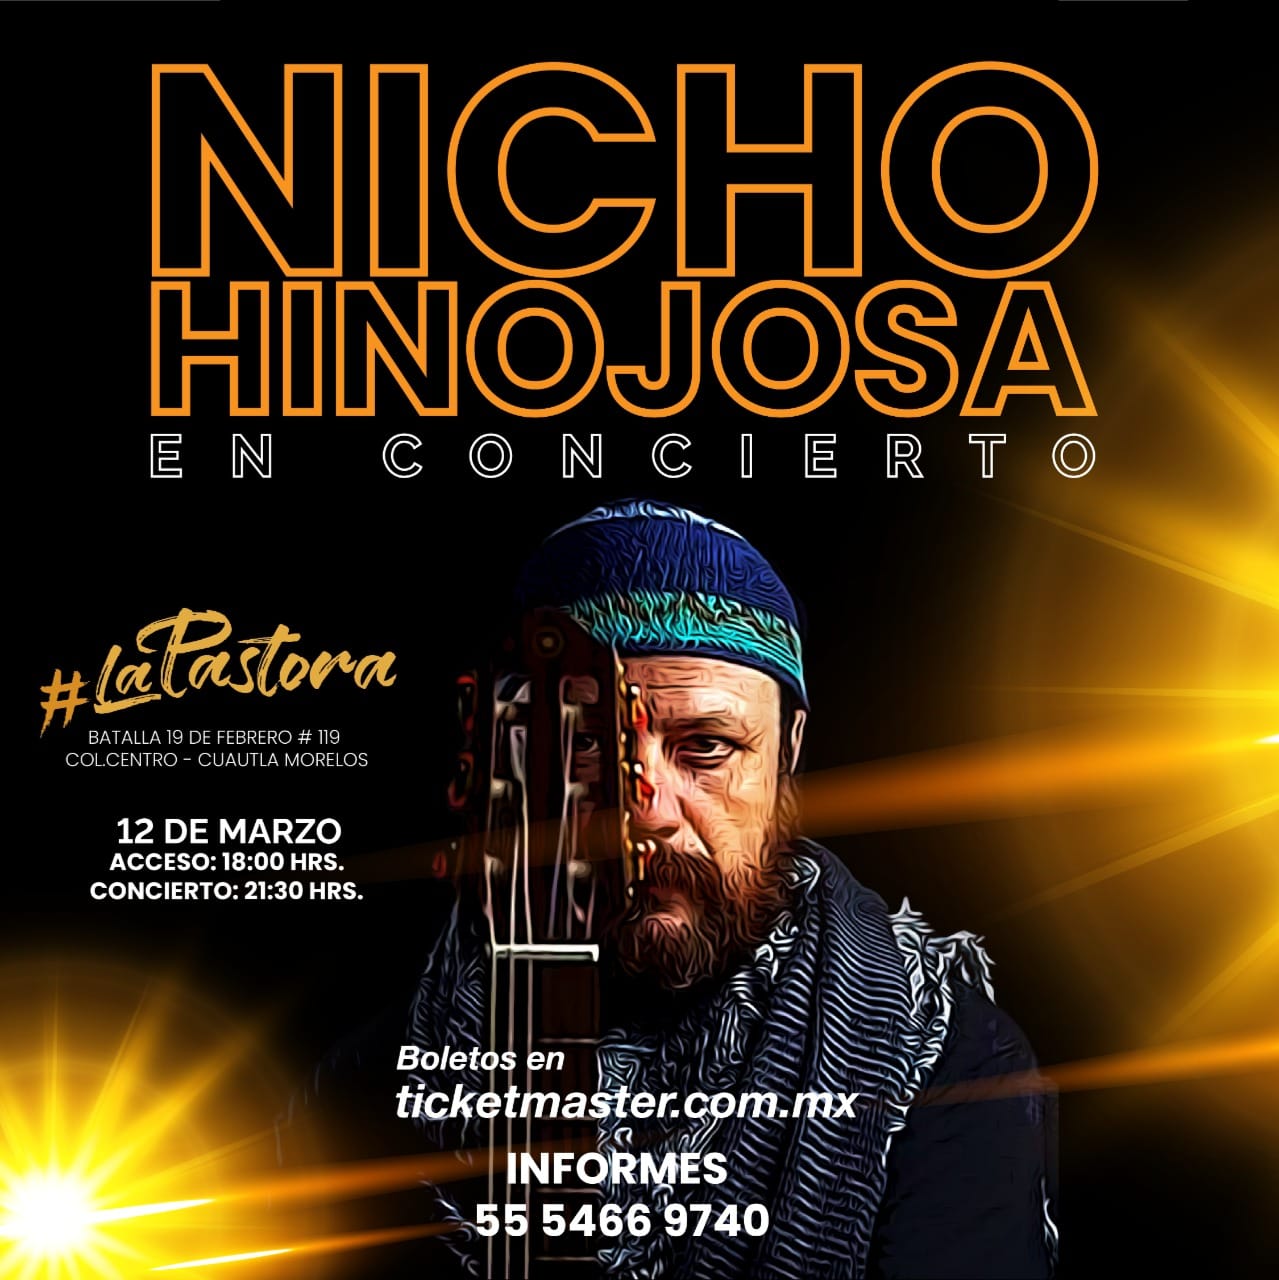 Nicho Hinojosa prepara conciertos con concepto bohemio • Once Noticias